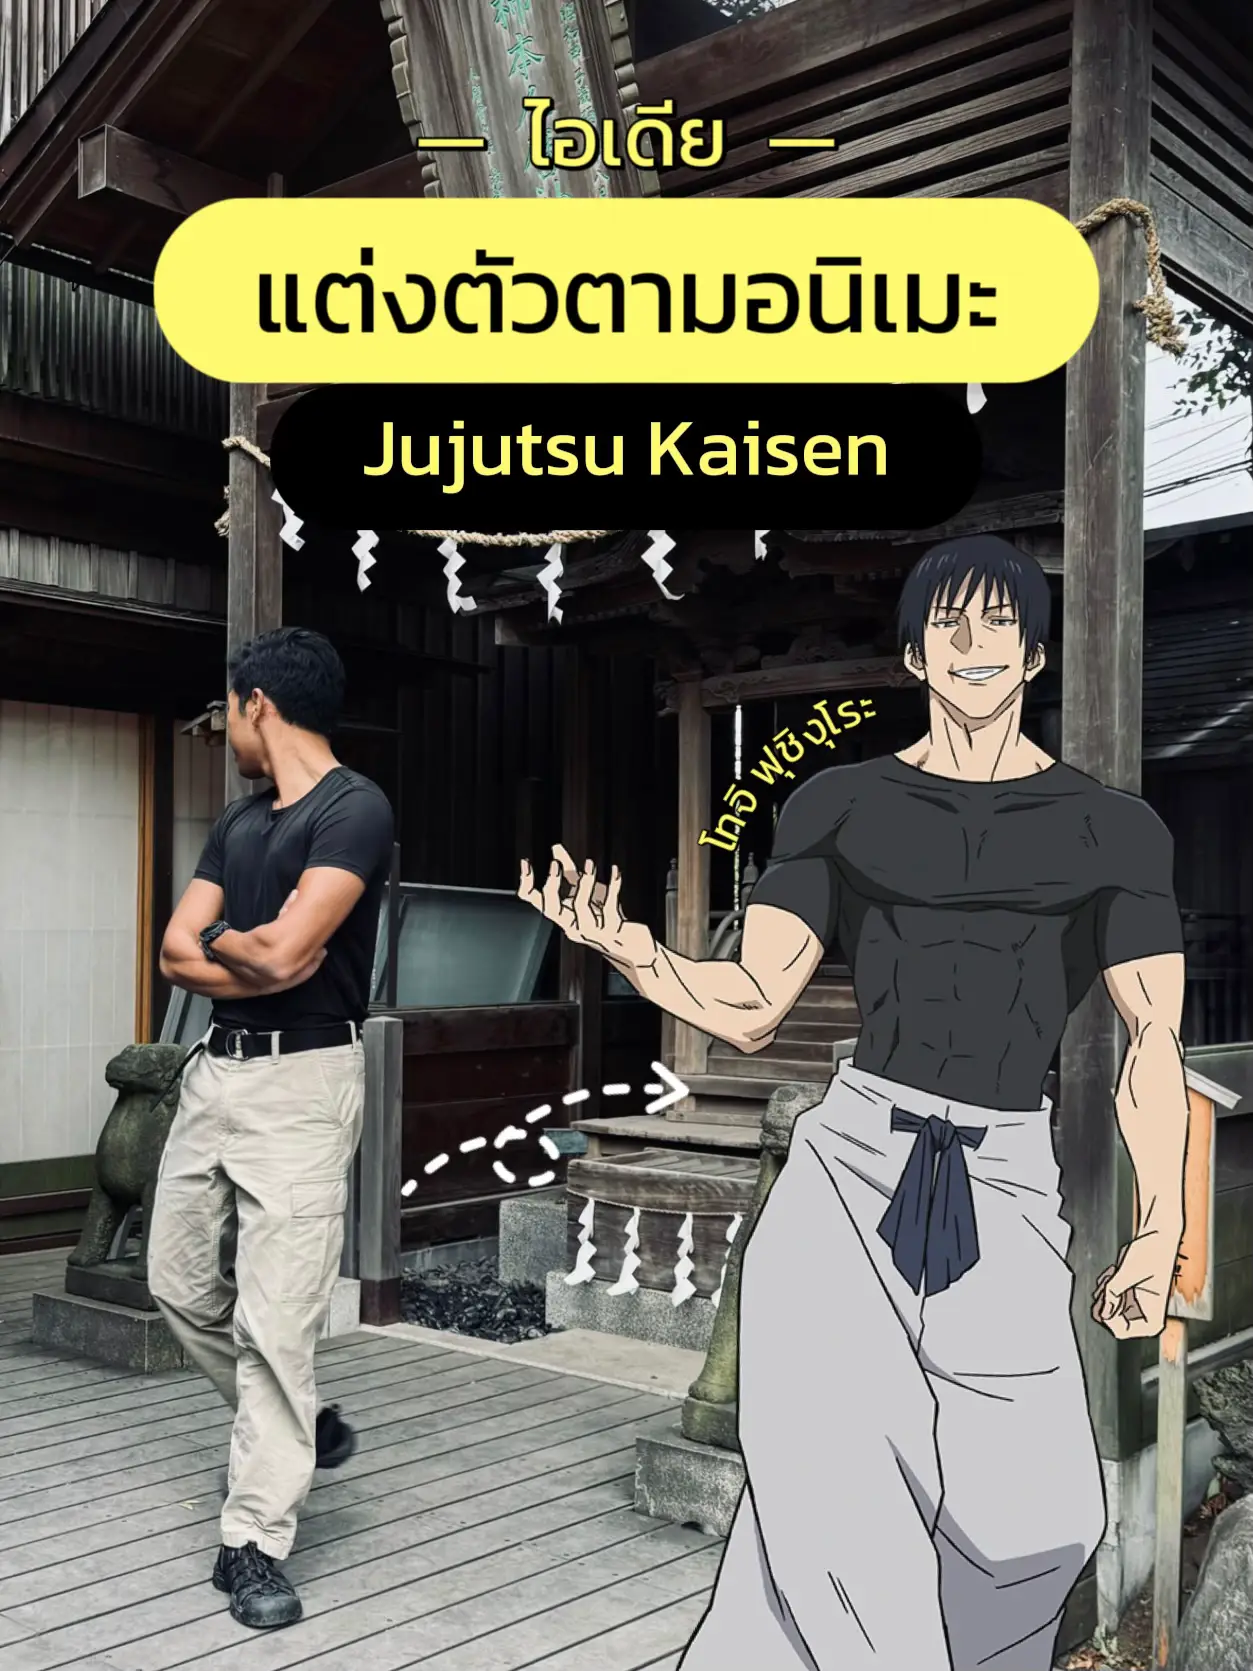 Jujutsu Kaisen - Jujutsu Fashion. 💕💕 #呪術廻戦 #jujutsukaisen